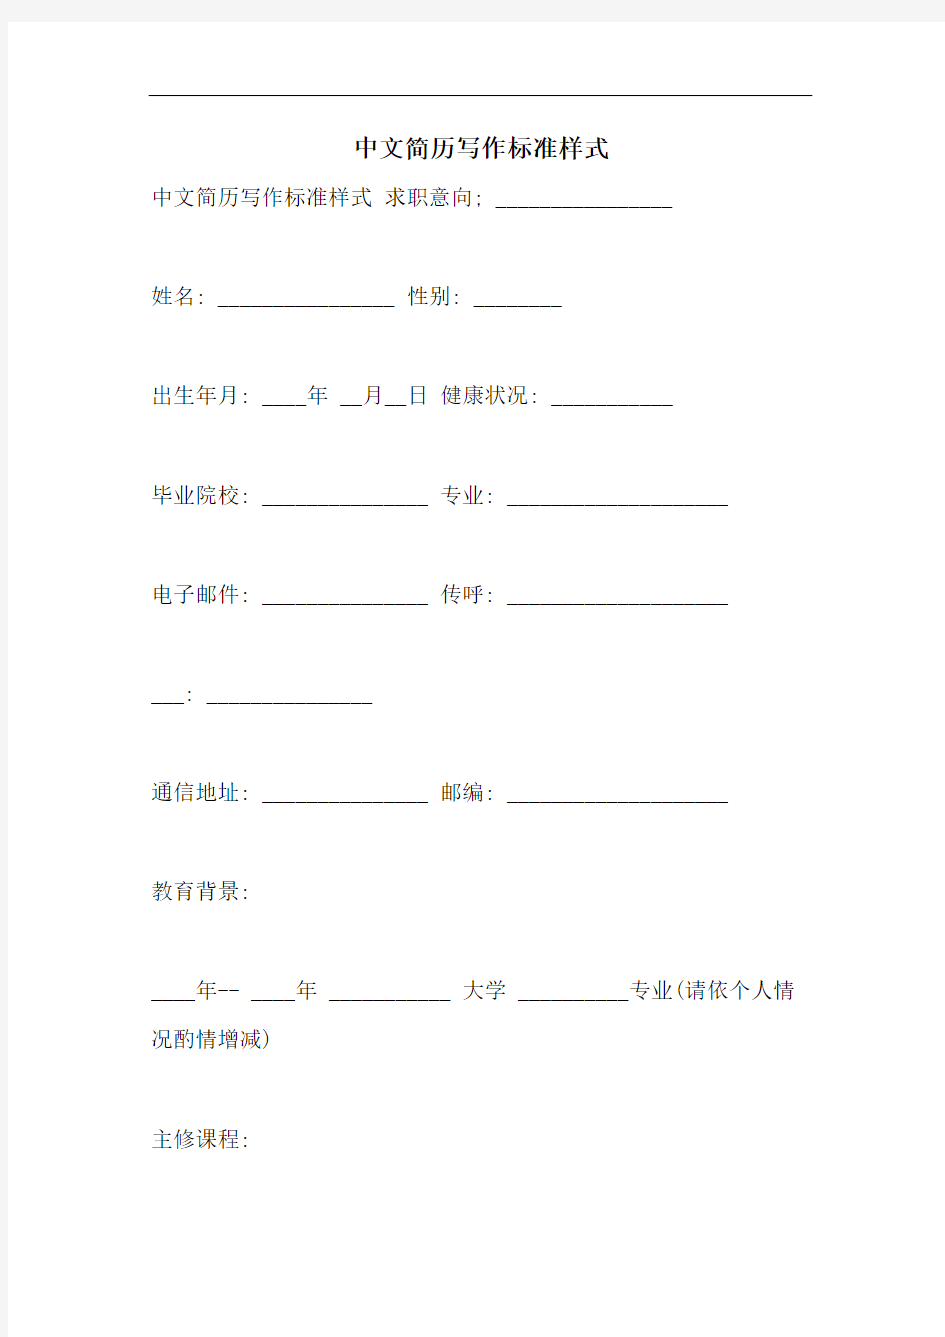 中文简历写作标准样式